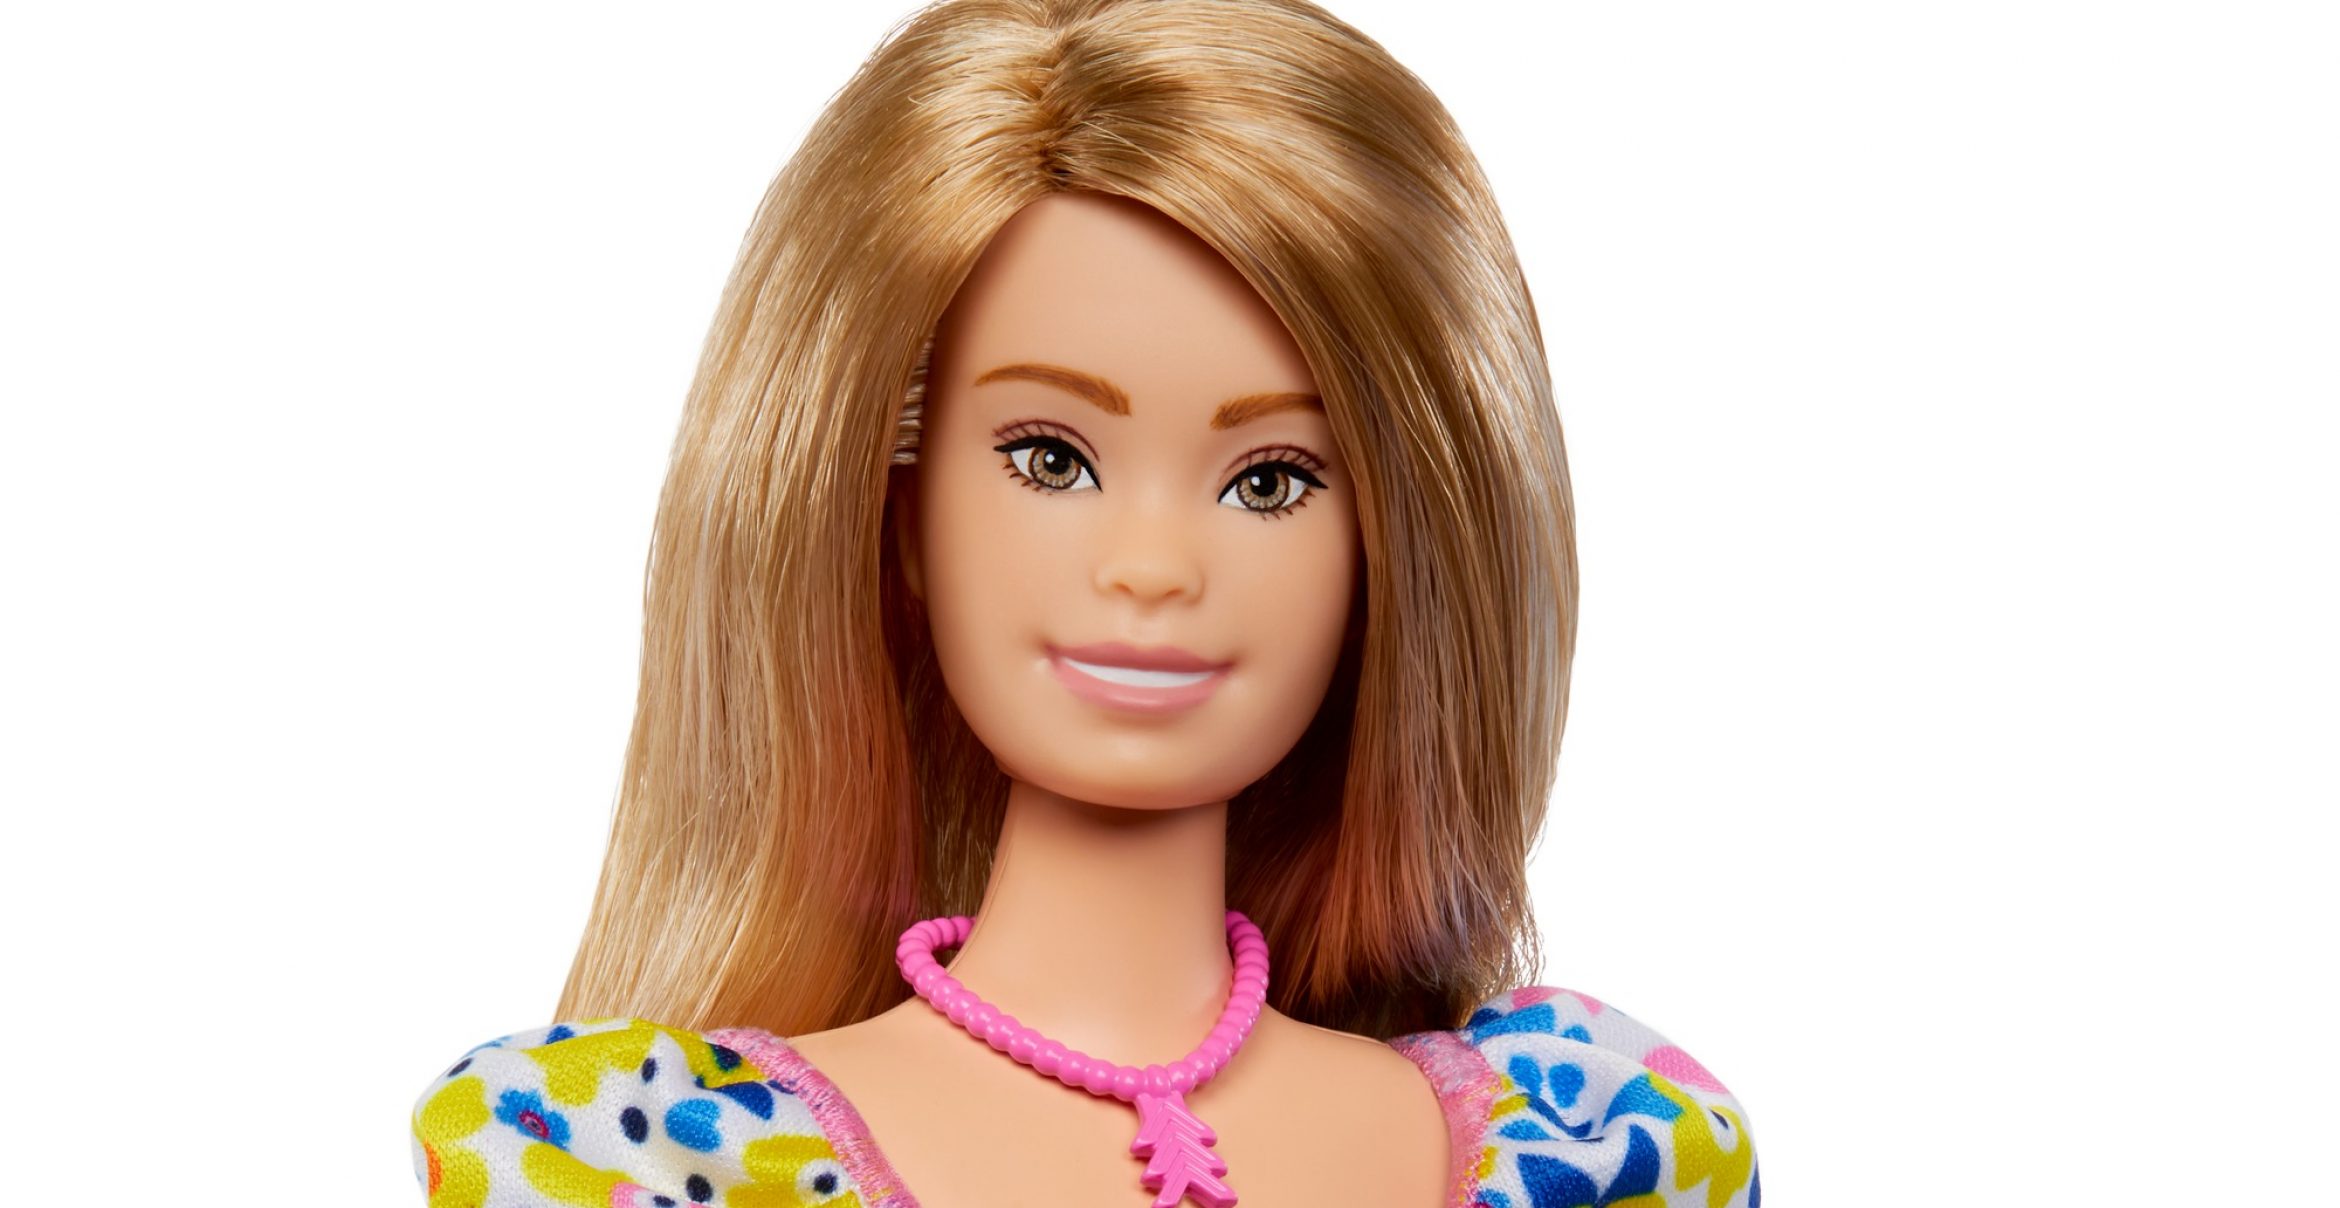 Mattel bringt erste Barbie-Puppe mit Down-Syndrom auf den Markt